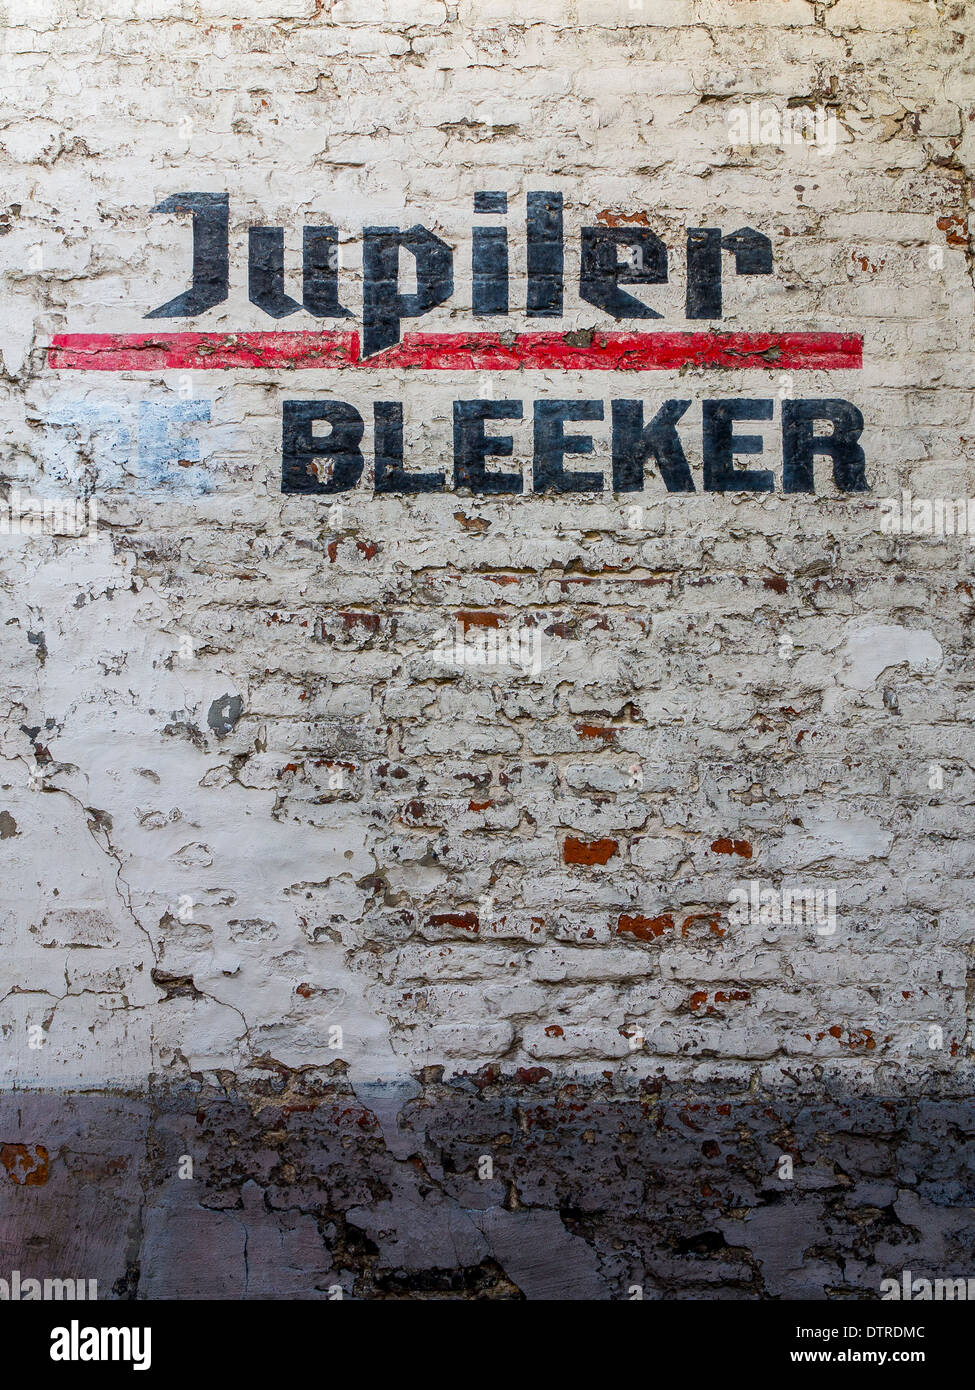 Anzeige für das Belgische Jupiler Bleeker Bier auf eine bemalte distressed Mauer in Brügge Stockfoto